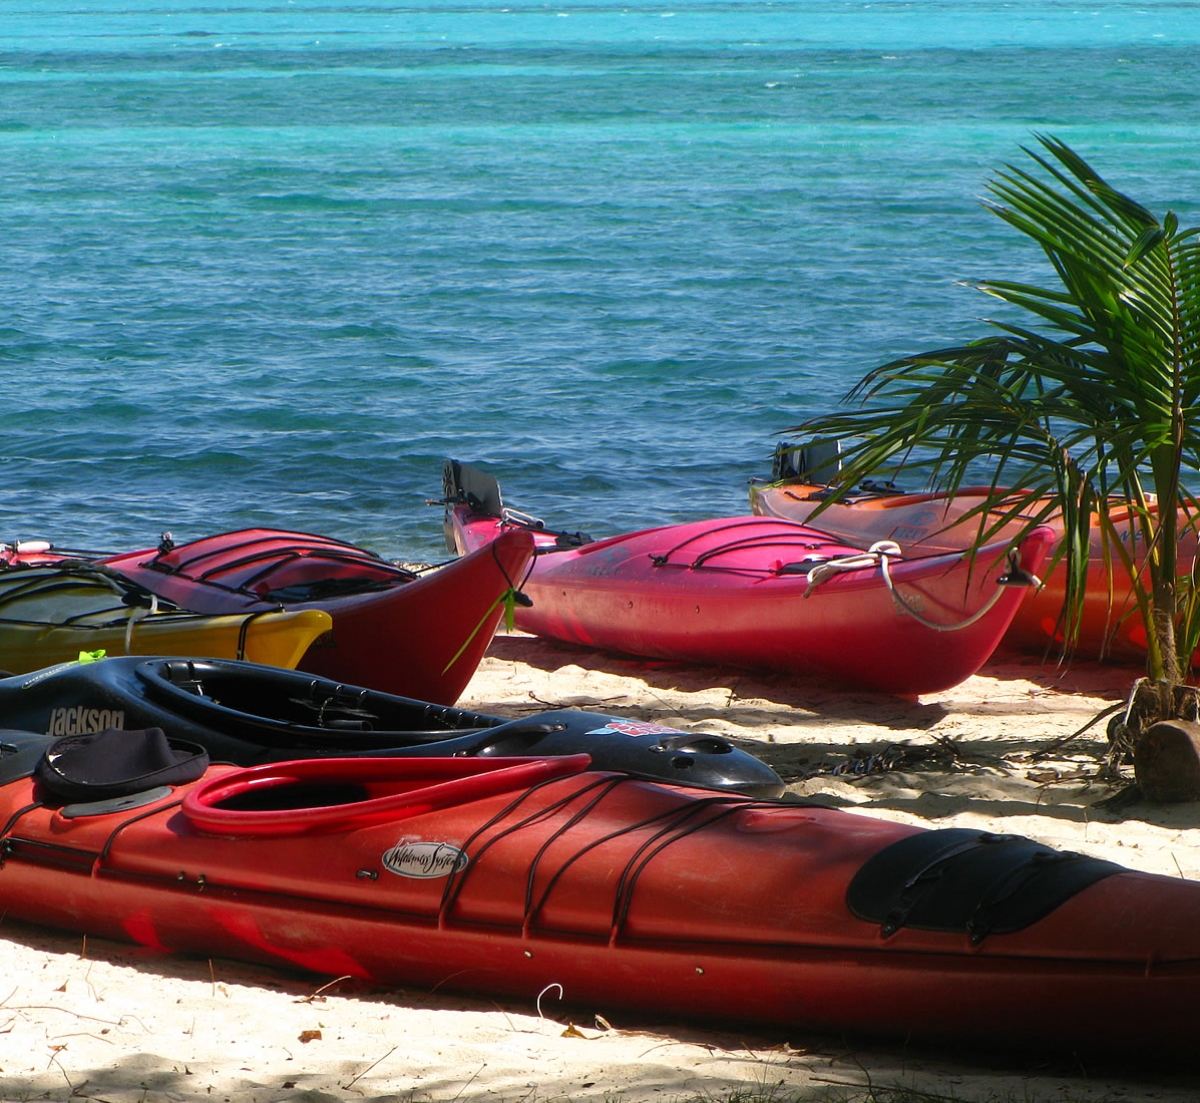 Gear and Kayaks on the beach